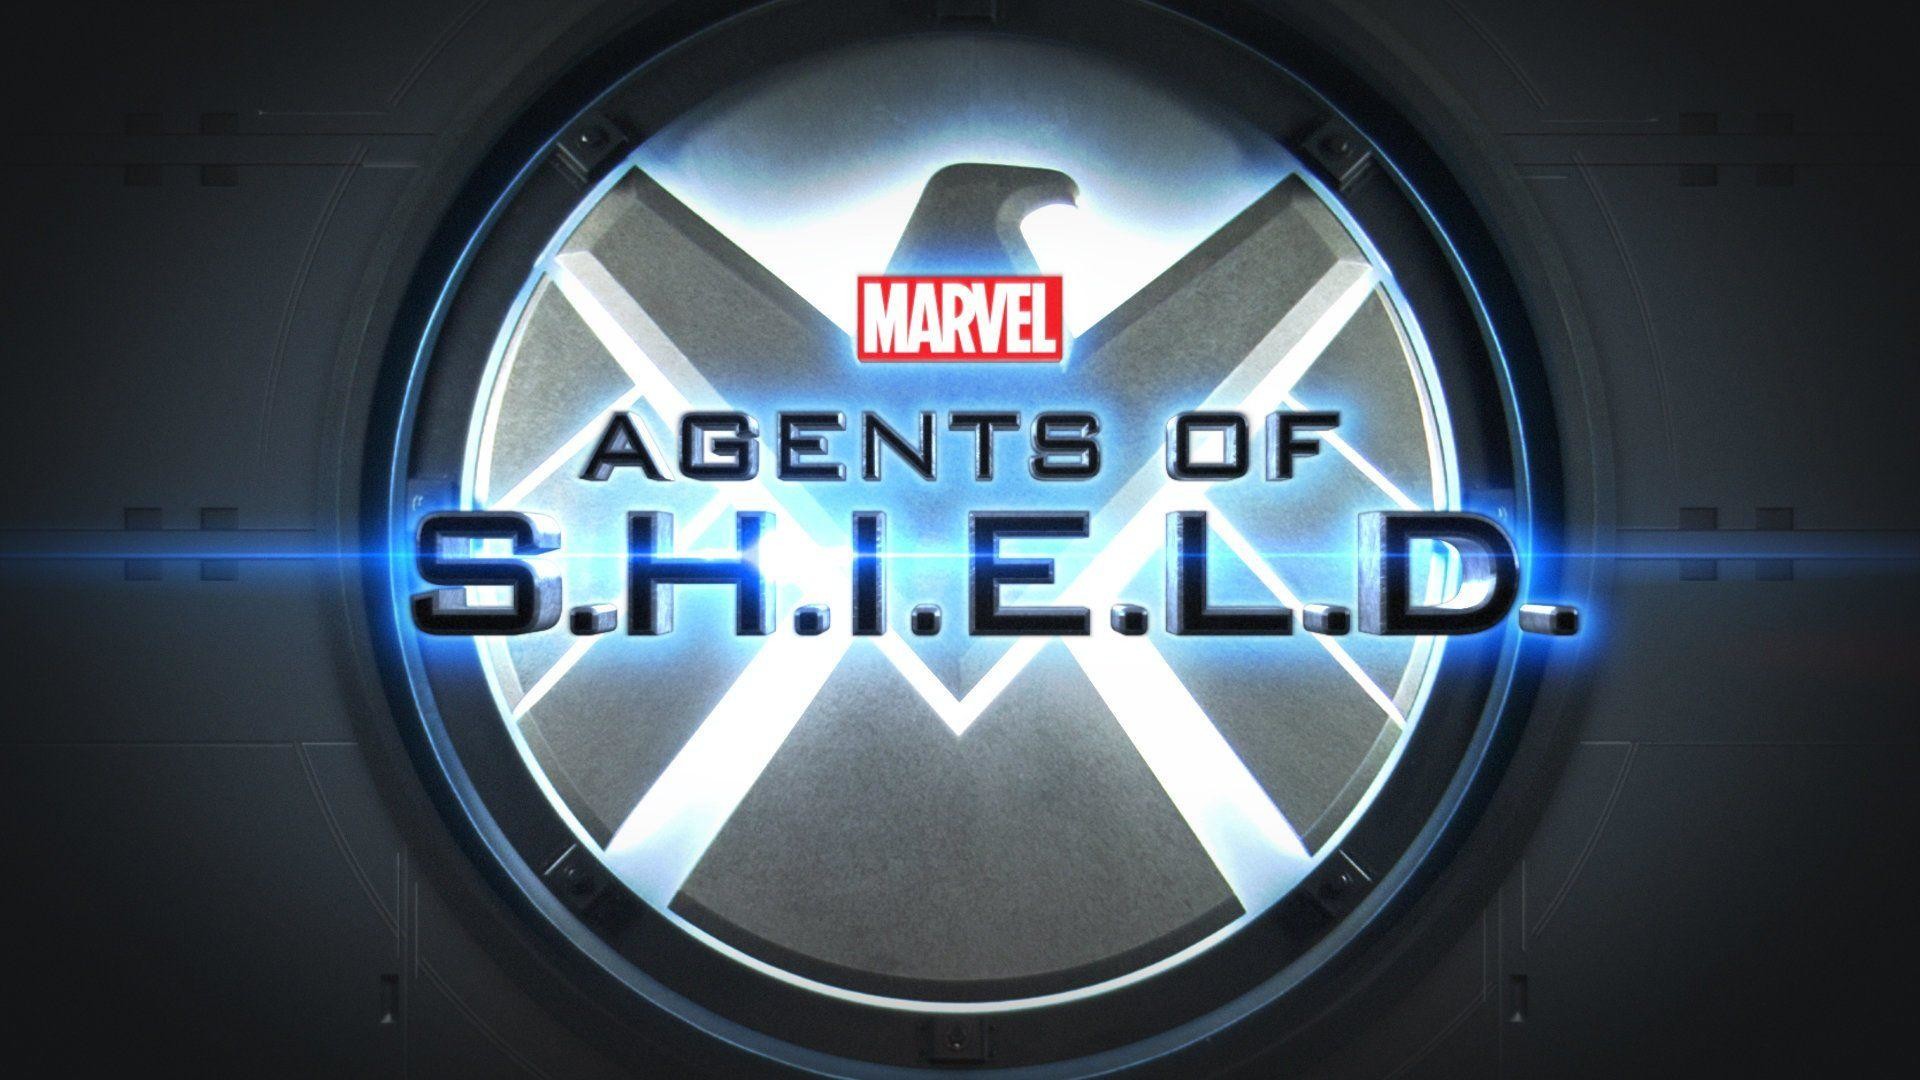 1920x1080 63 Marvel's Agents Of S.H.I.E.L.D. HD Wallpapers | Backgrounds .